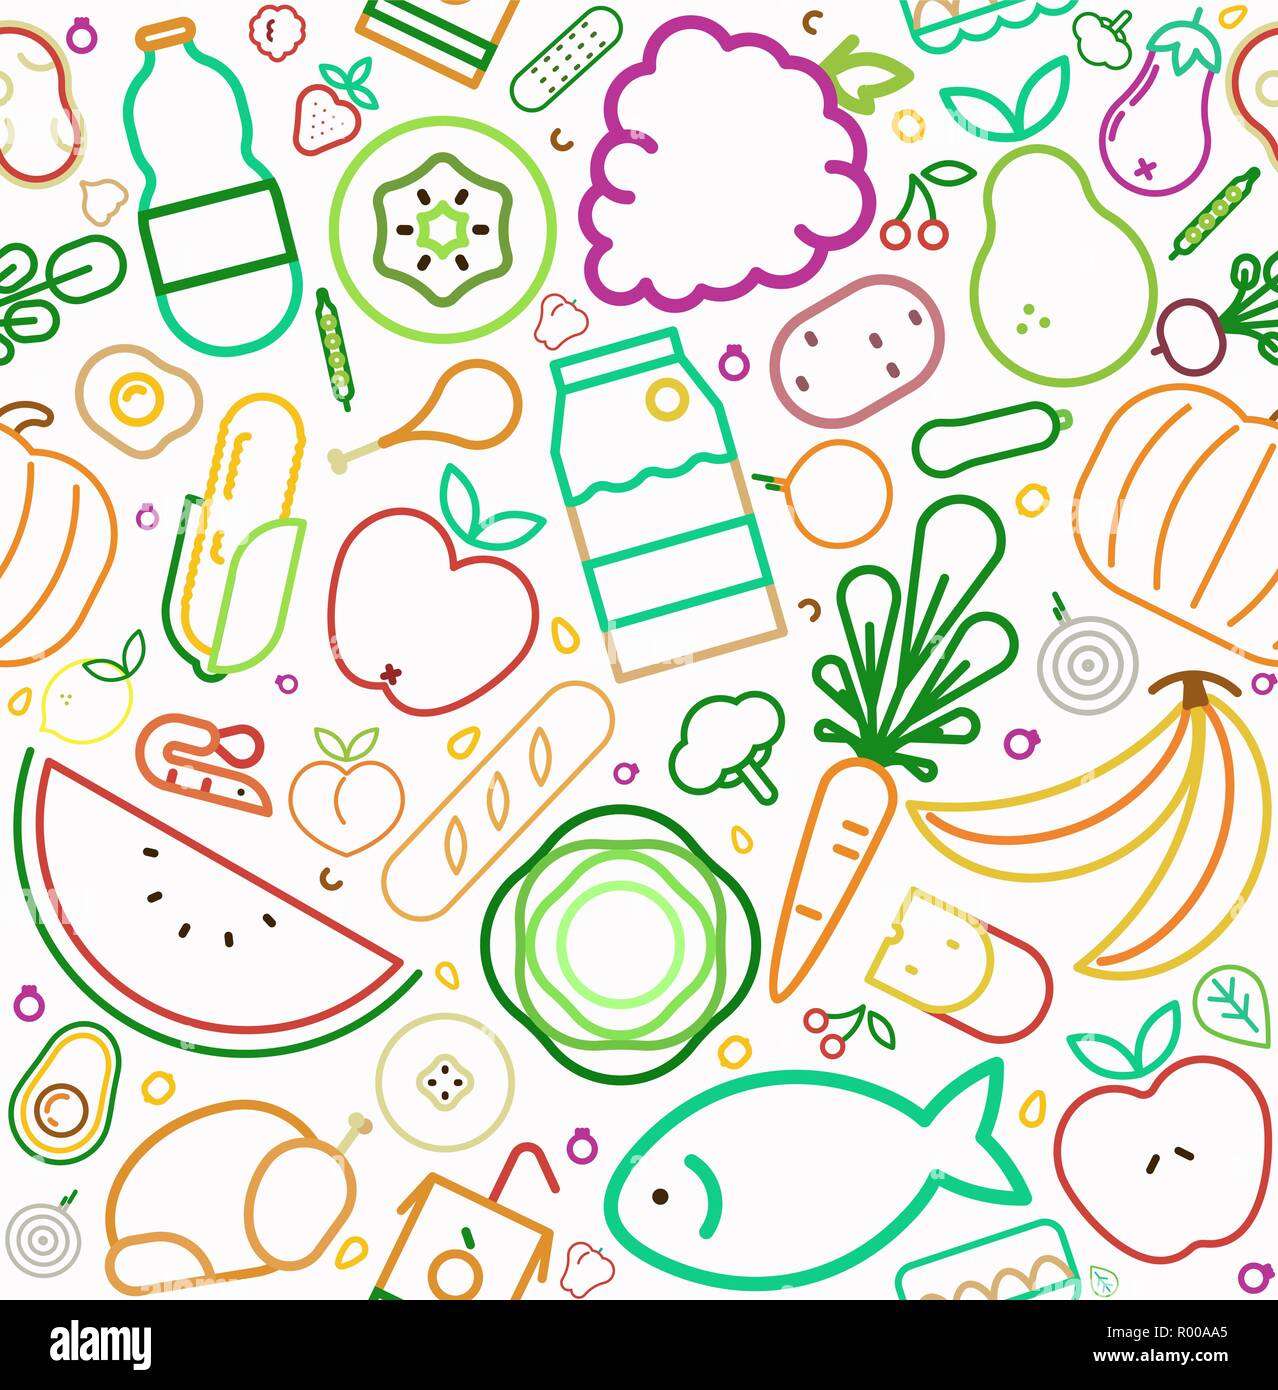 Essen icon nahtlose Muster mit bunten Linienstil Symbole. Gesunde Ernährung oder ausgewogene Ernährung Konzept Hintergrund. Enthält Obst, Gemüse, Fleisch Stock Vektor